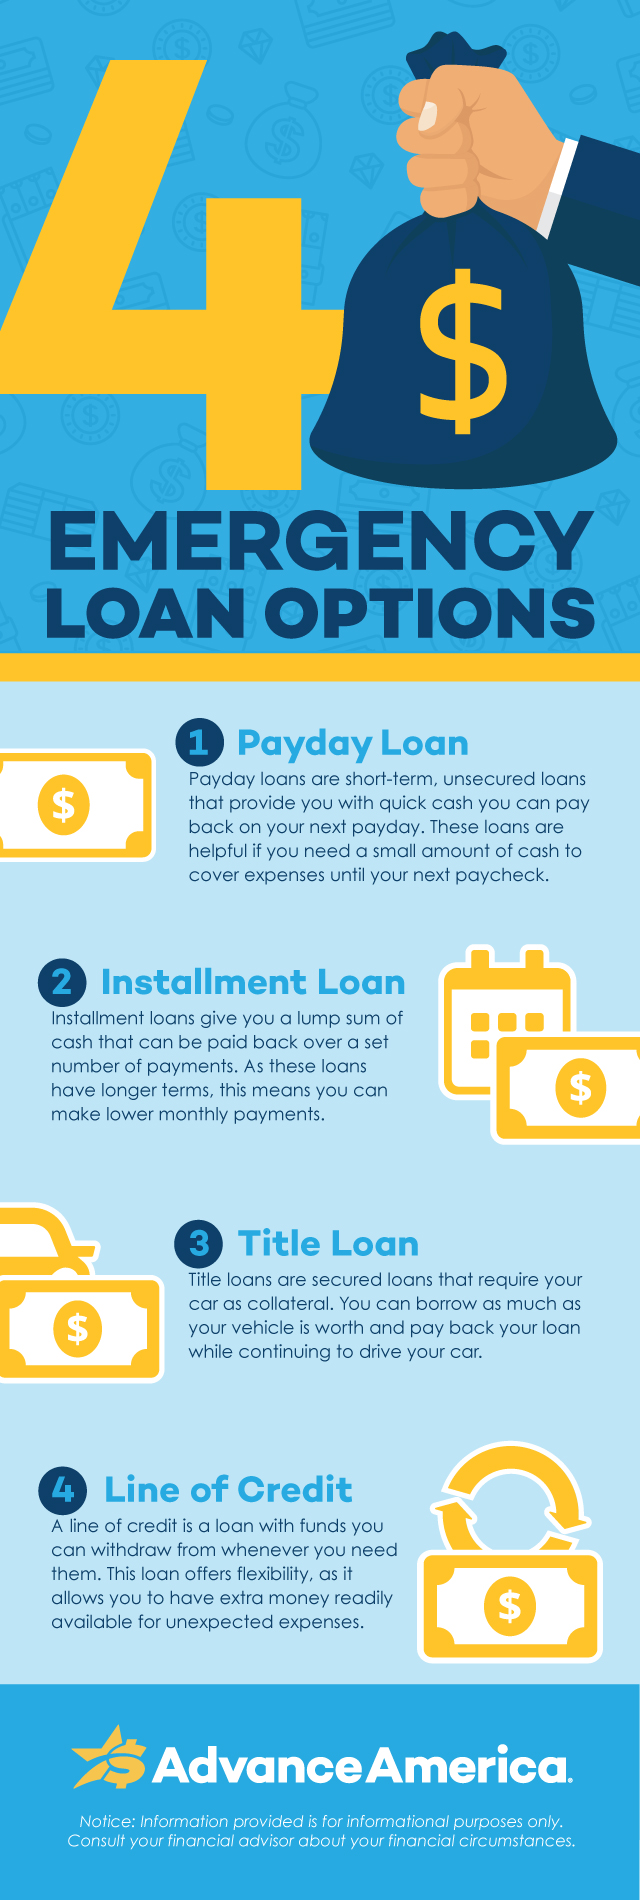 4 emergency loan options